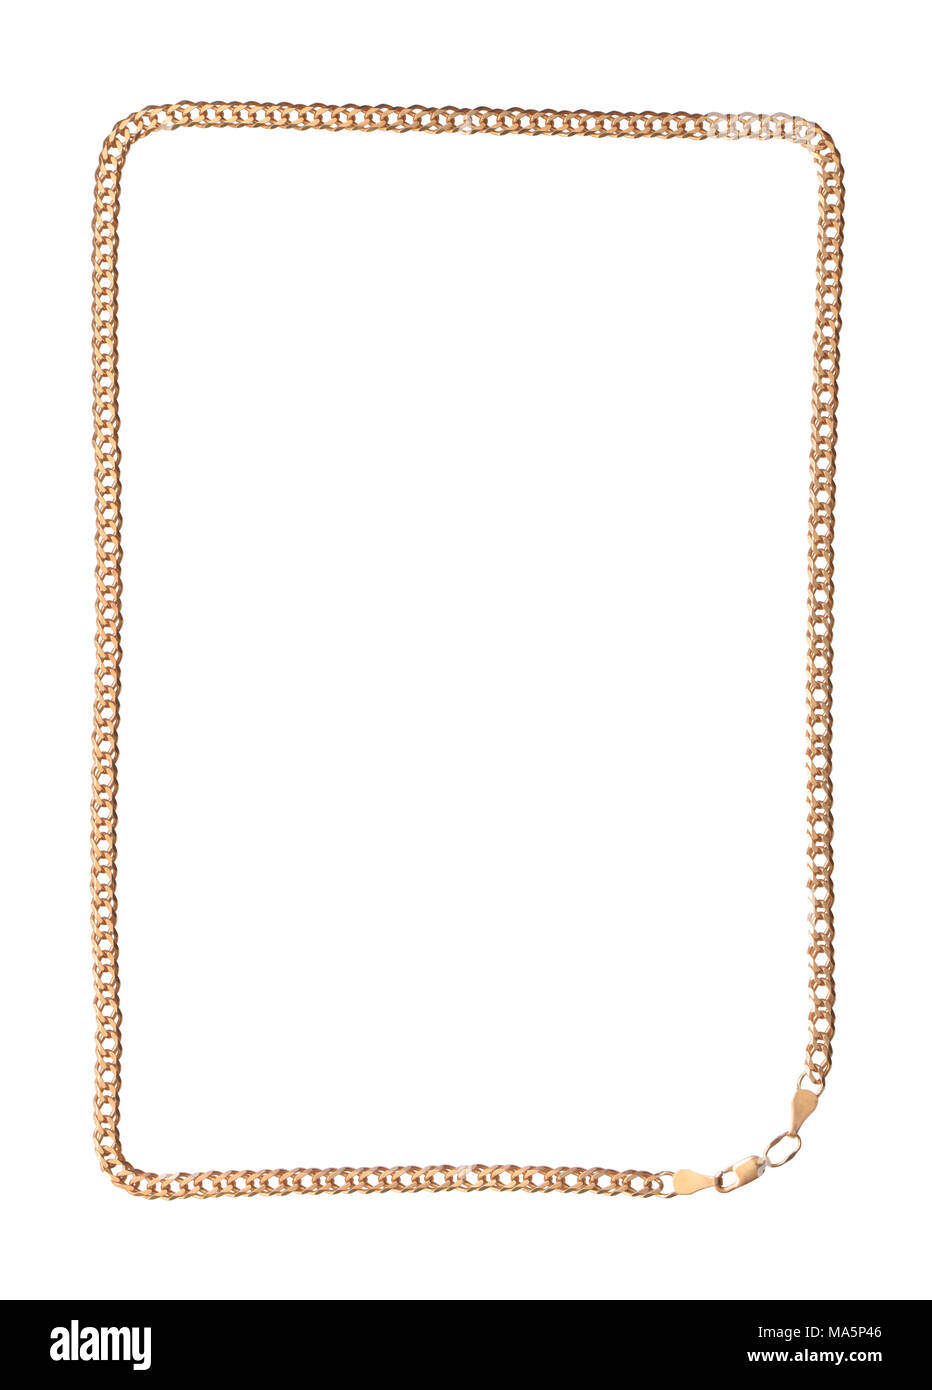 Cadre en or nacklace isolé sur fond blanc avec clipping path Banque D'Images